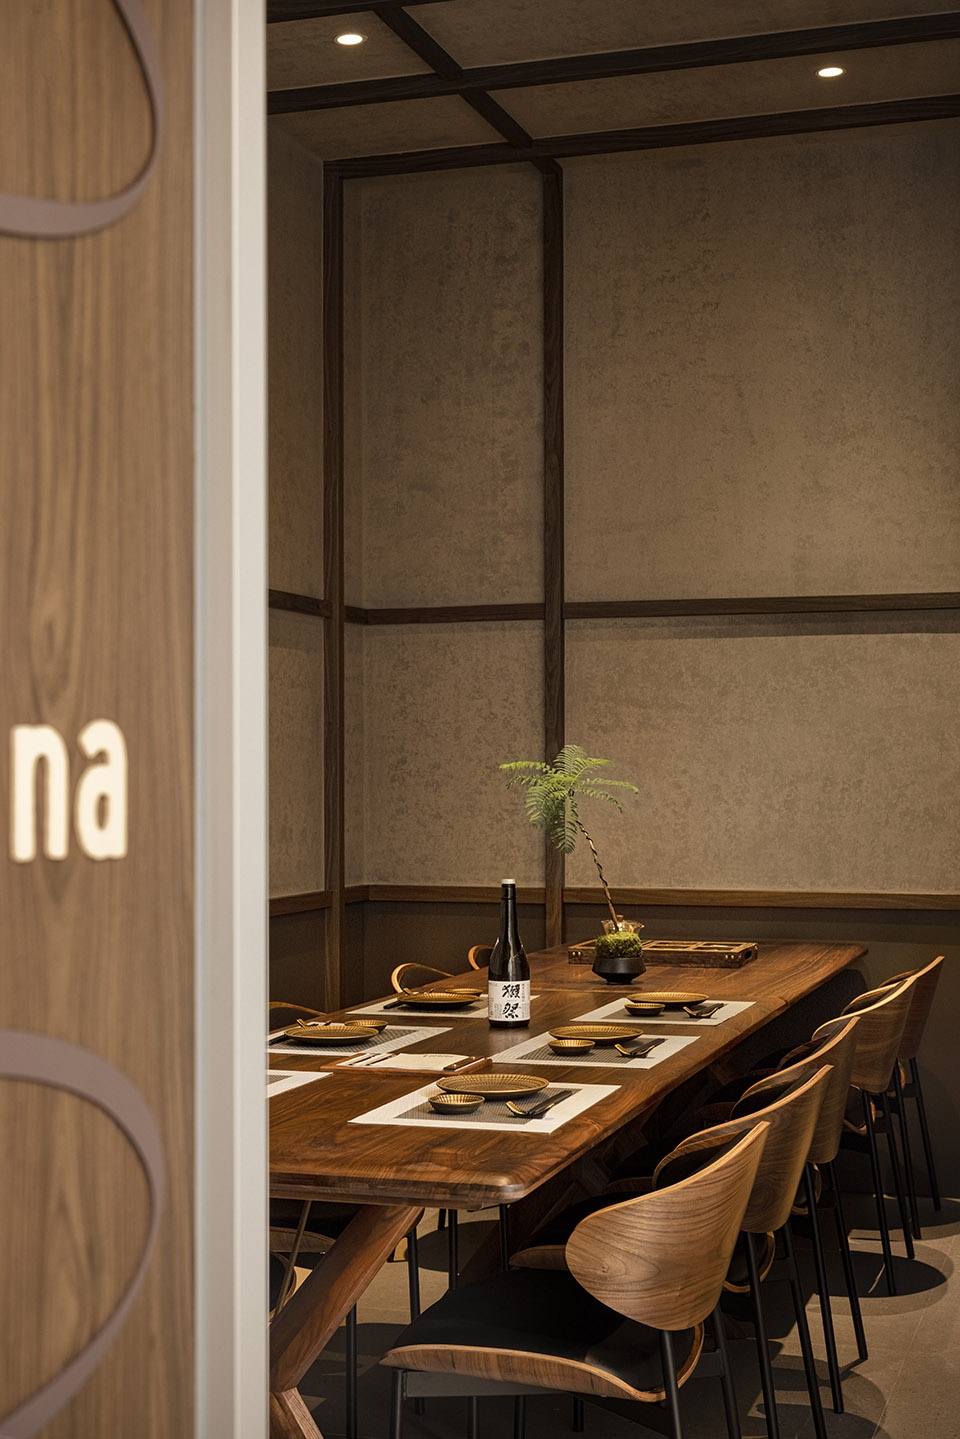 日本料理餐廳設計,餐廳設計,日料店設計,餐廳設計案例,餐廳設計方案,日式主題餐廳設計,壽司店設計,深圳,SOKO SOKO日料店,SORA索拉設計